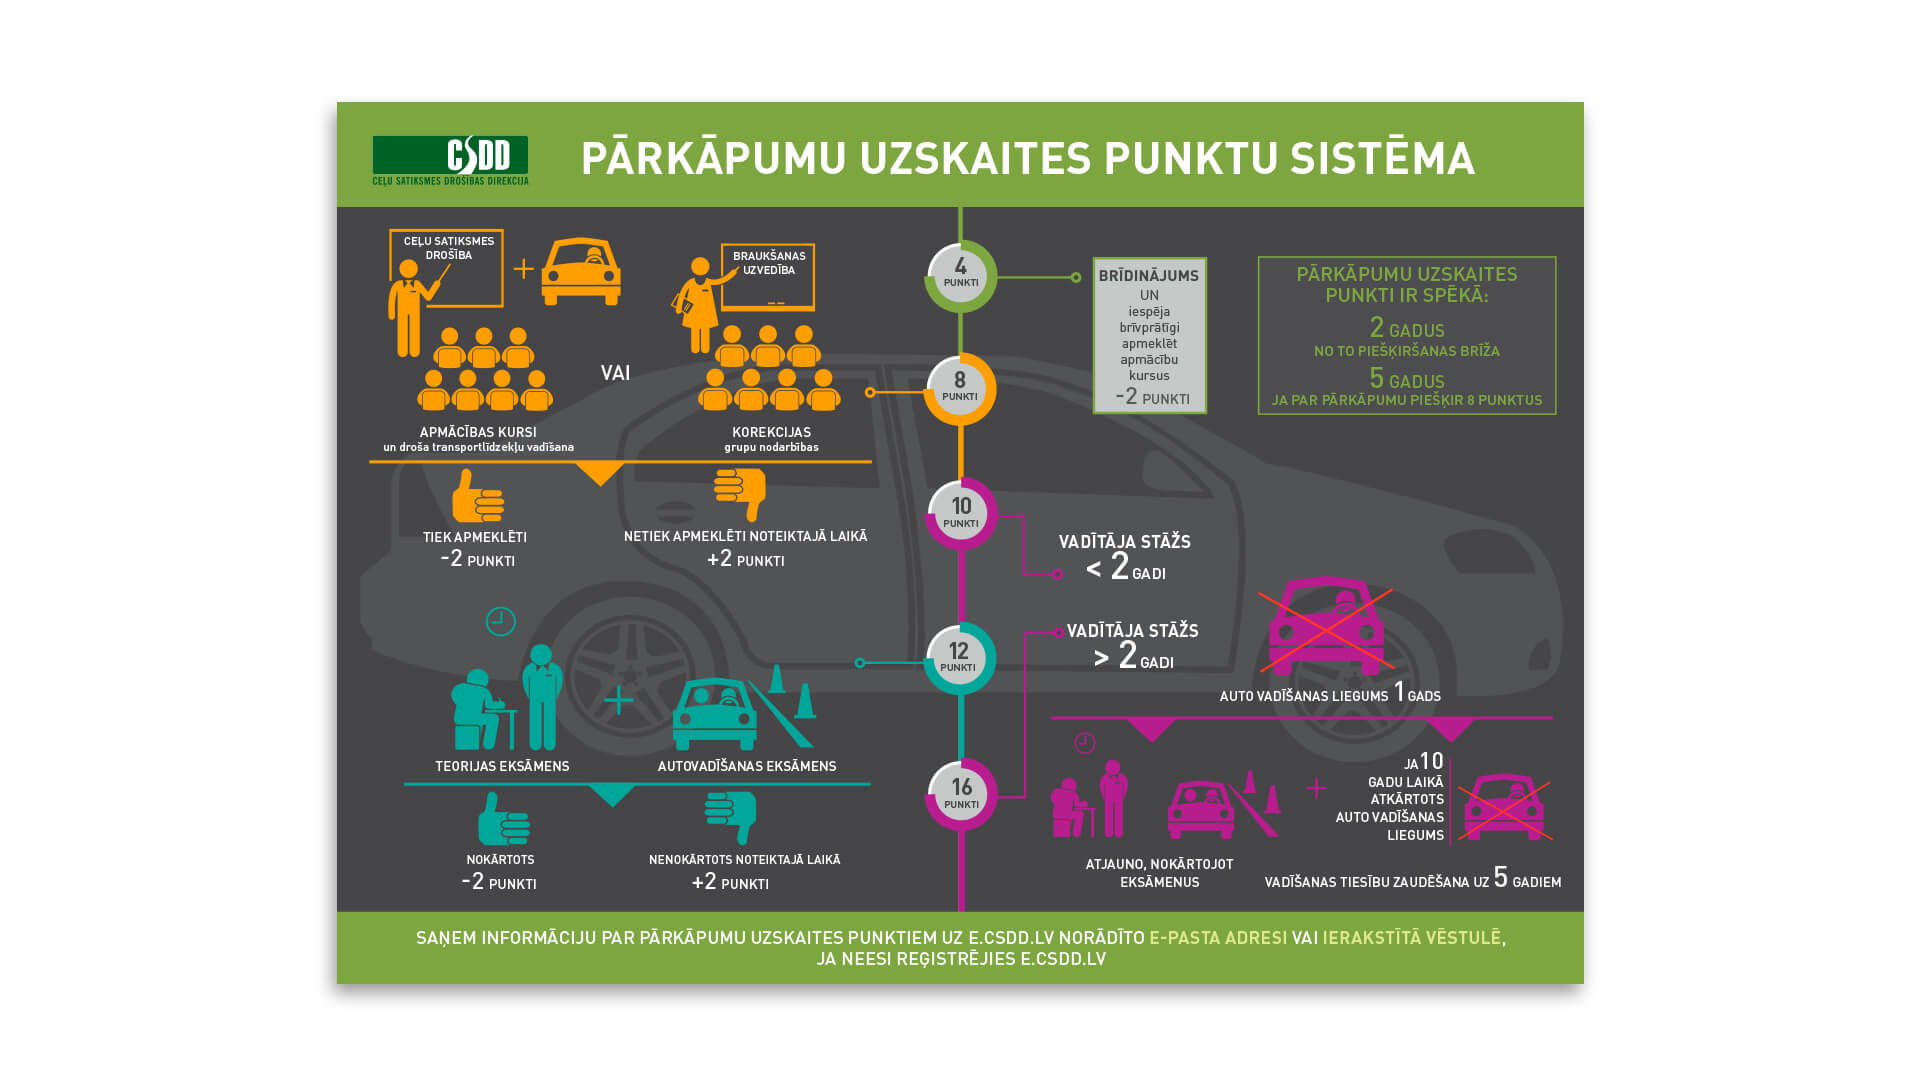 CSDD_infografika_parkapumu_uzskaites_punkti_1920x1080